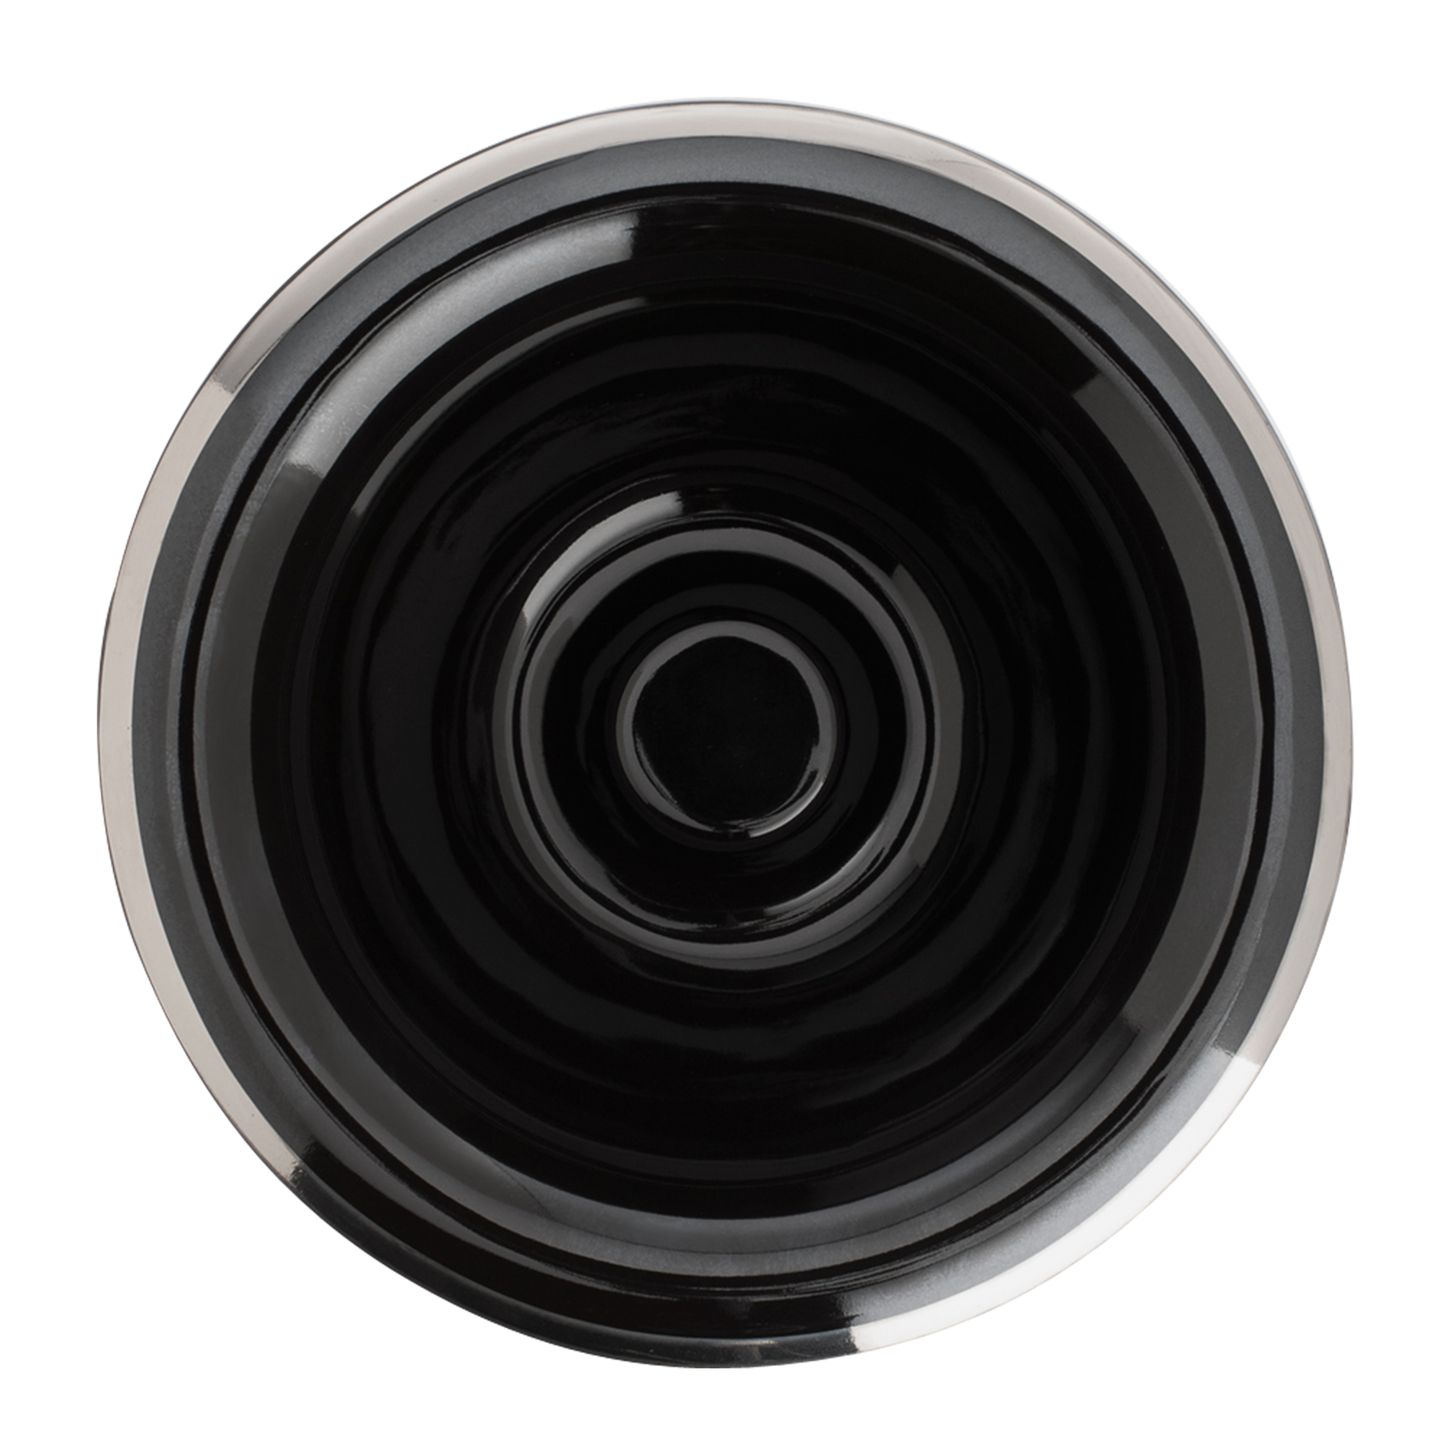 MUHLE Black Porcelain Platinum Rim Shaving Dish: Black porcelain finish shaving bowl featuring platinum rim.